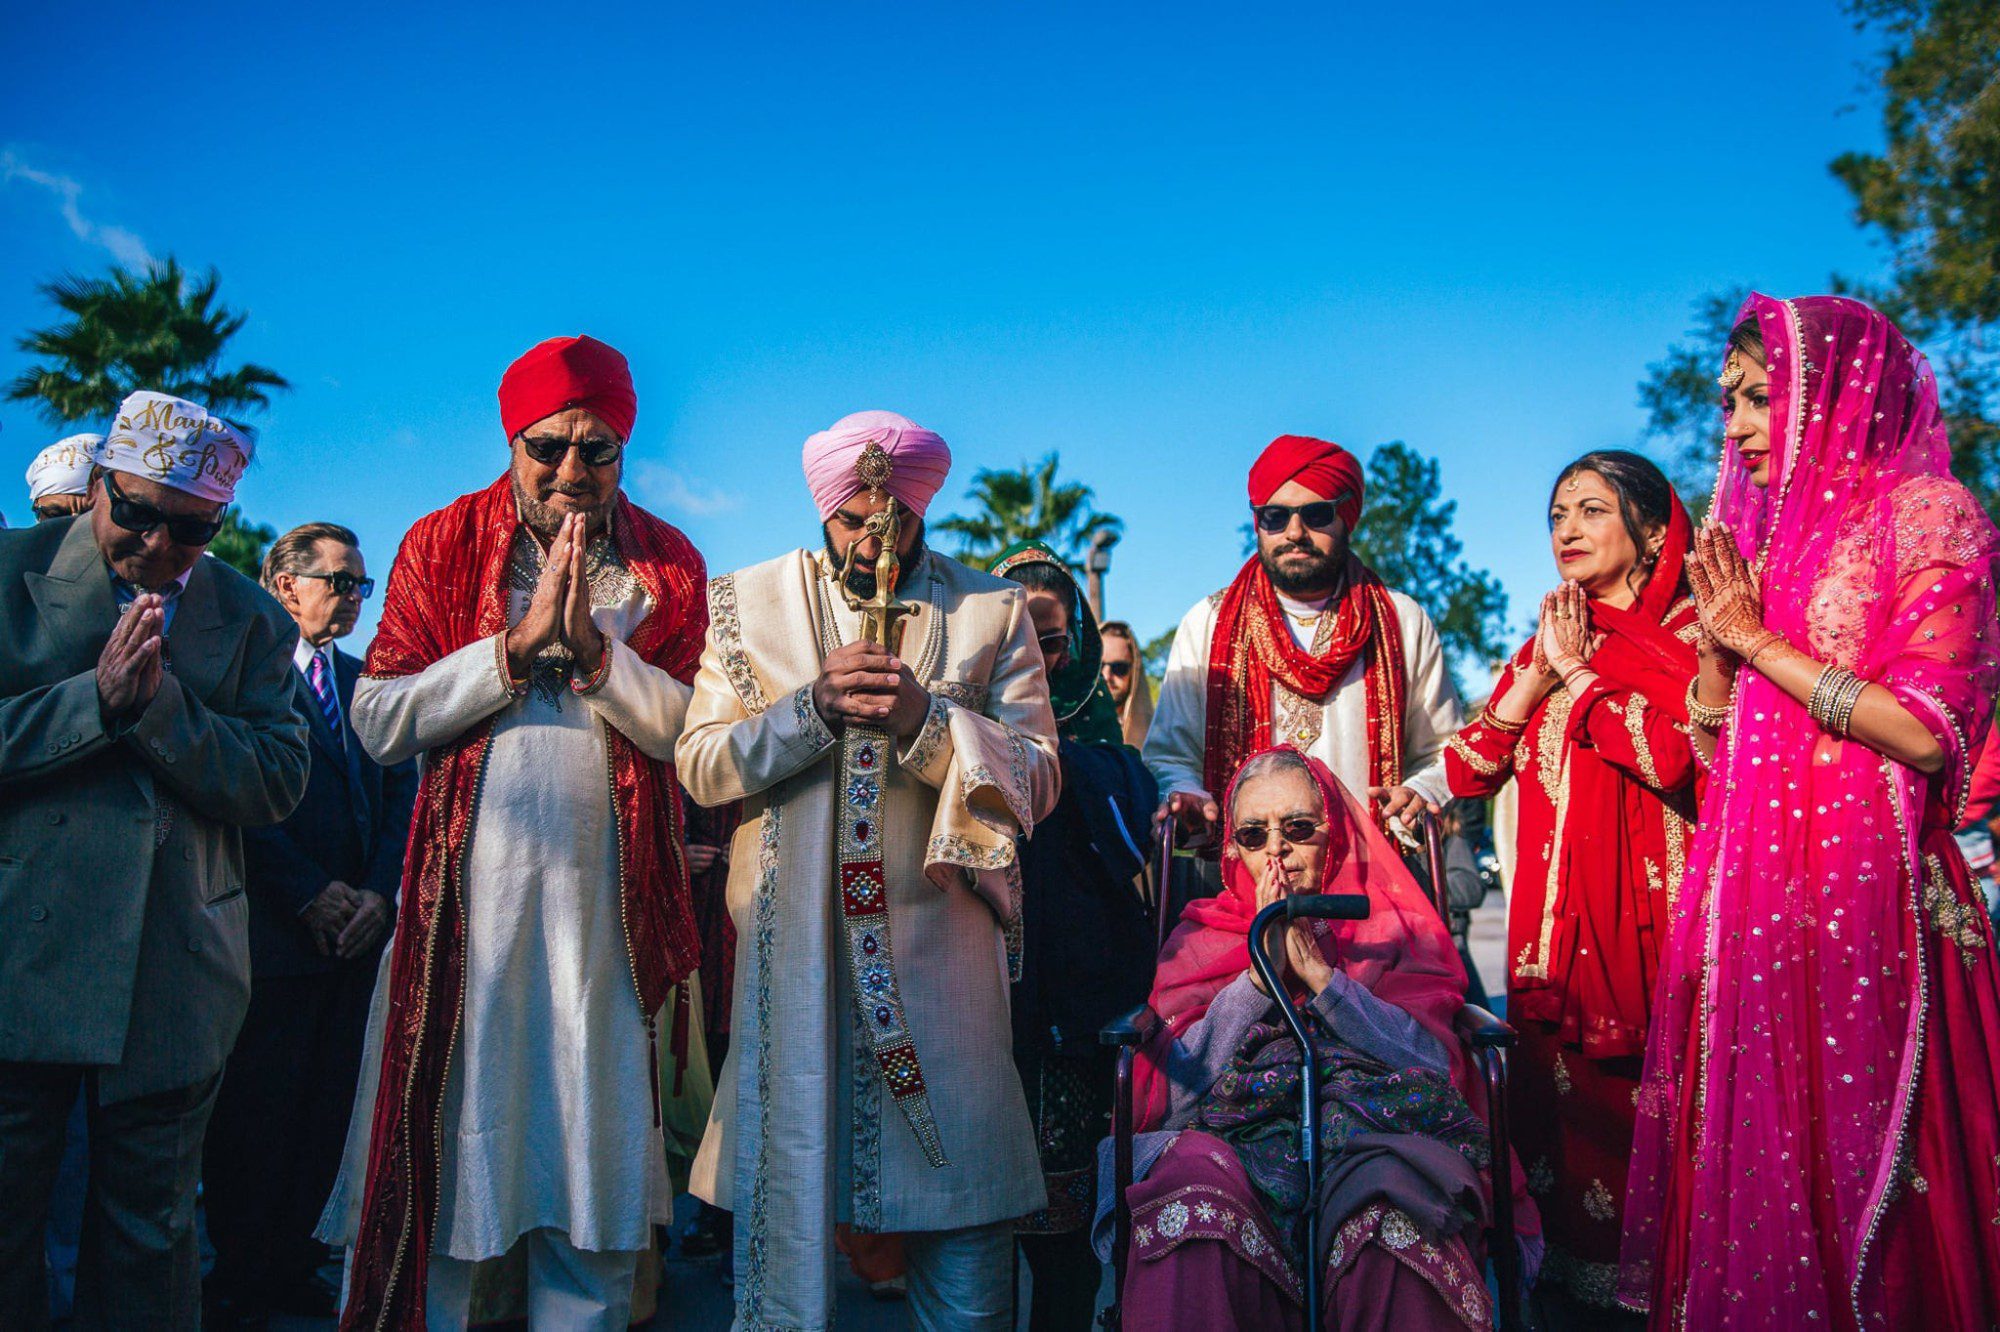 Orlando South Asian wedding